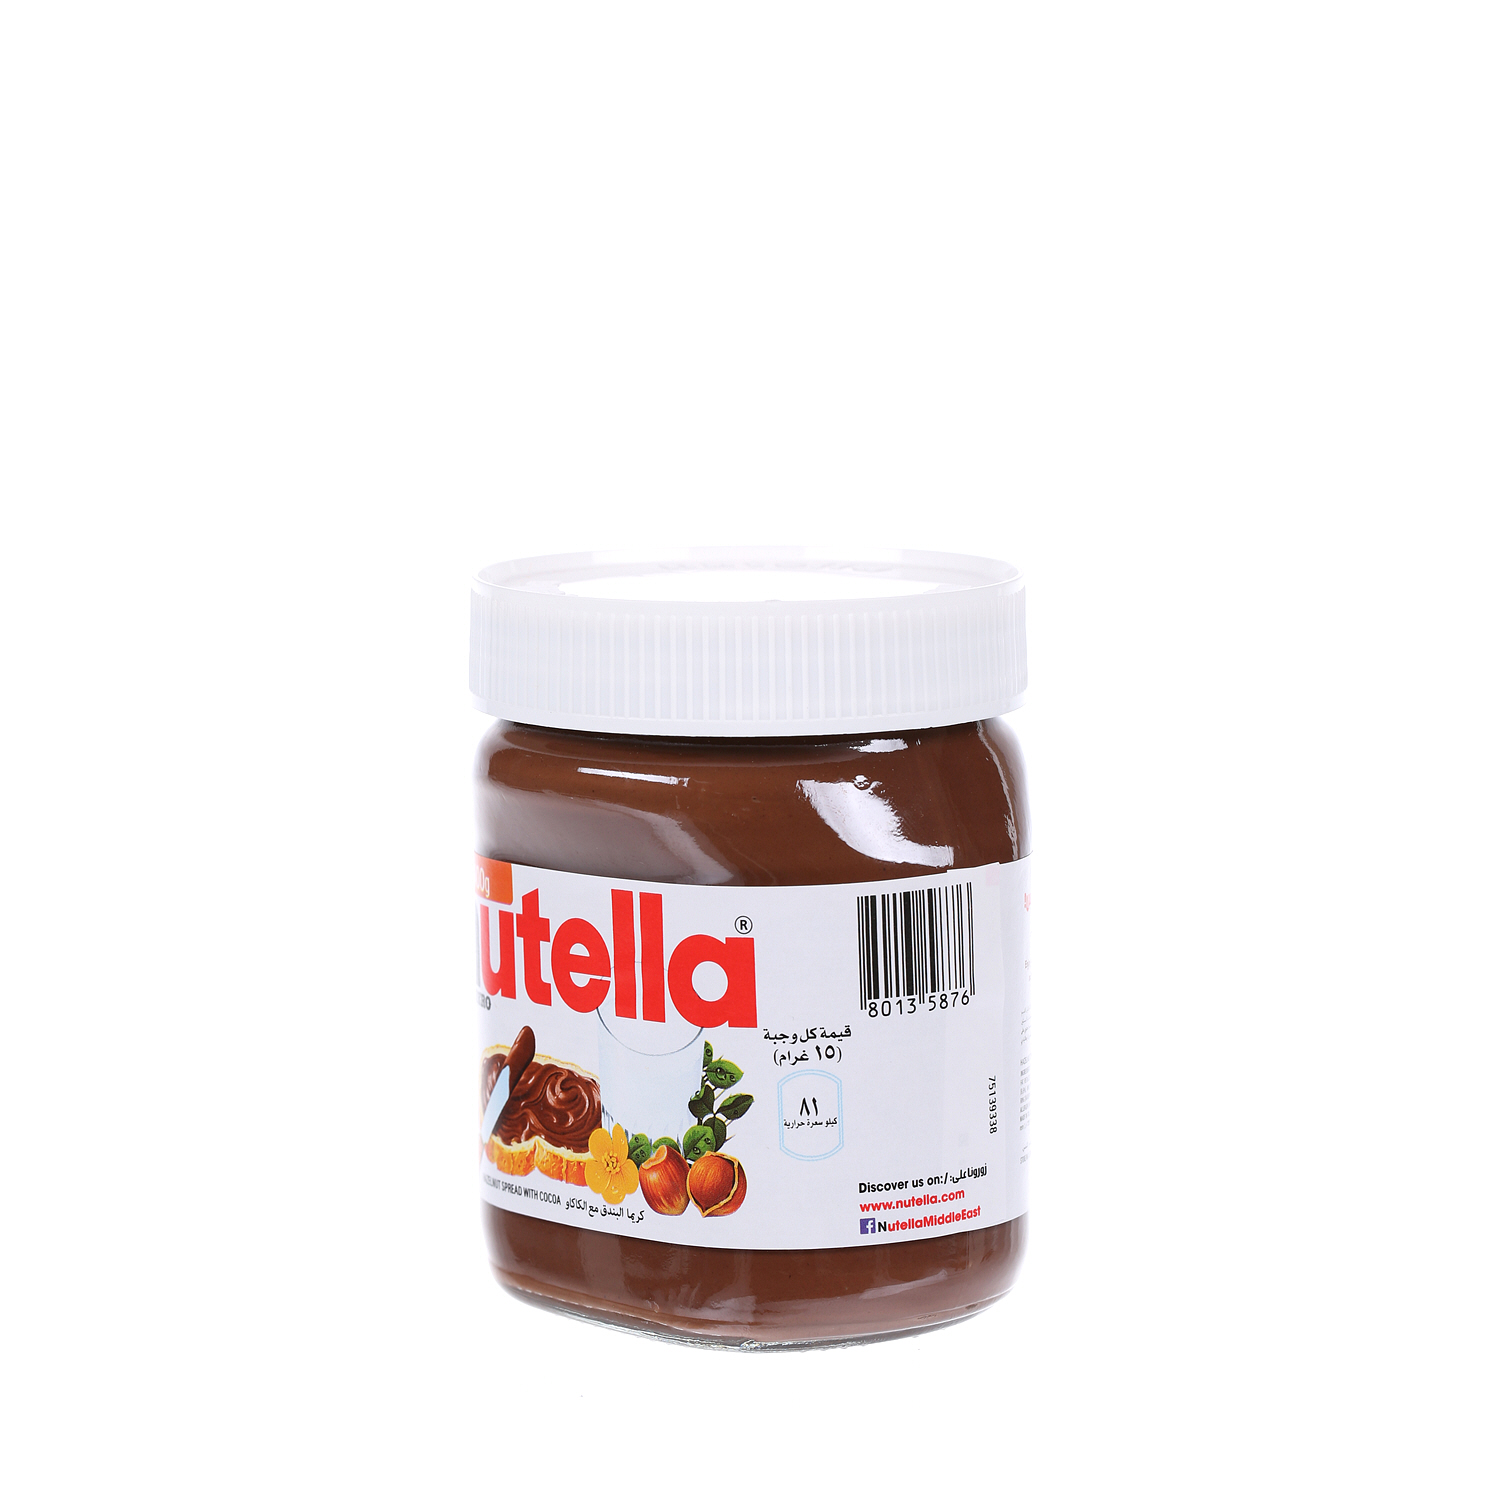 Nutella Spread Choco Jar 400 g